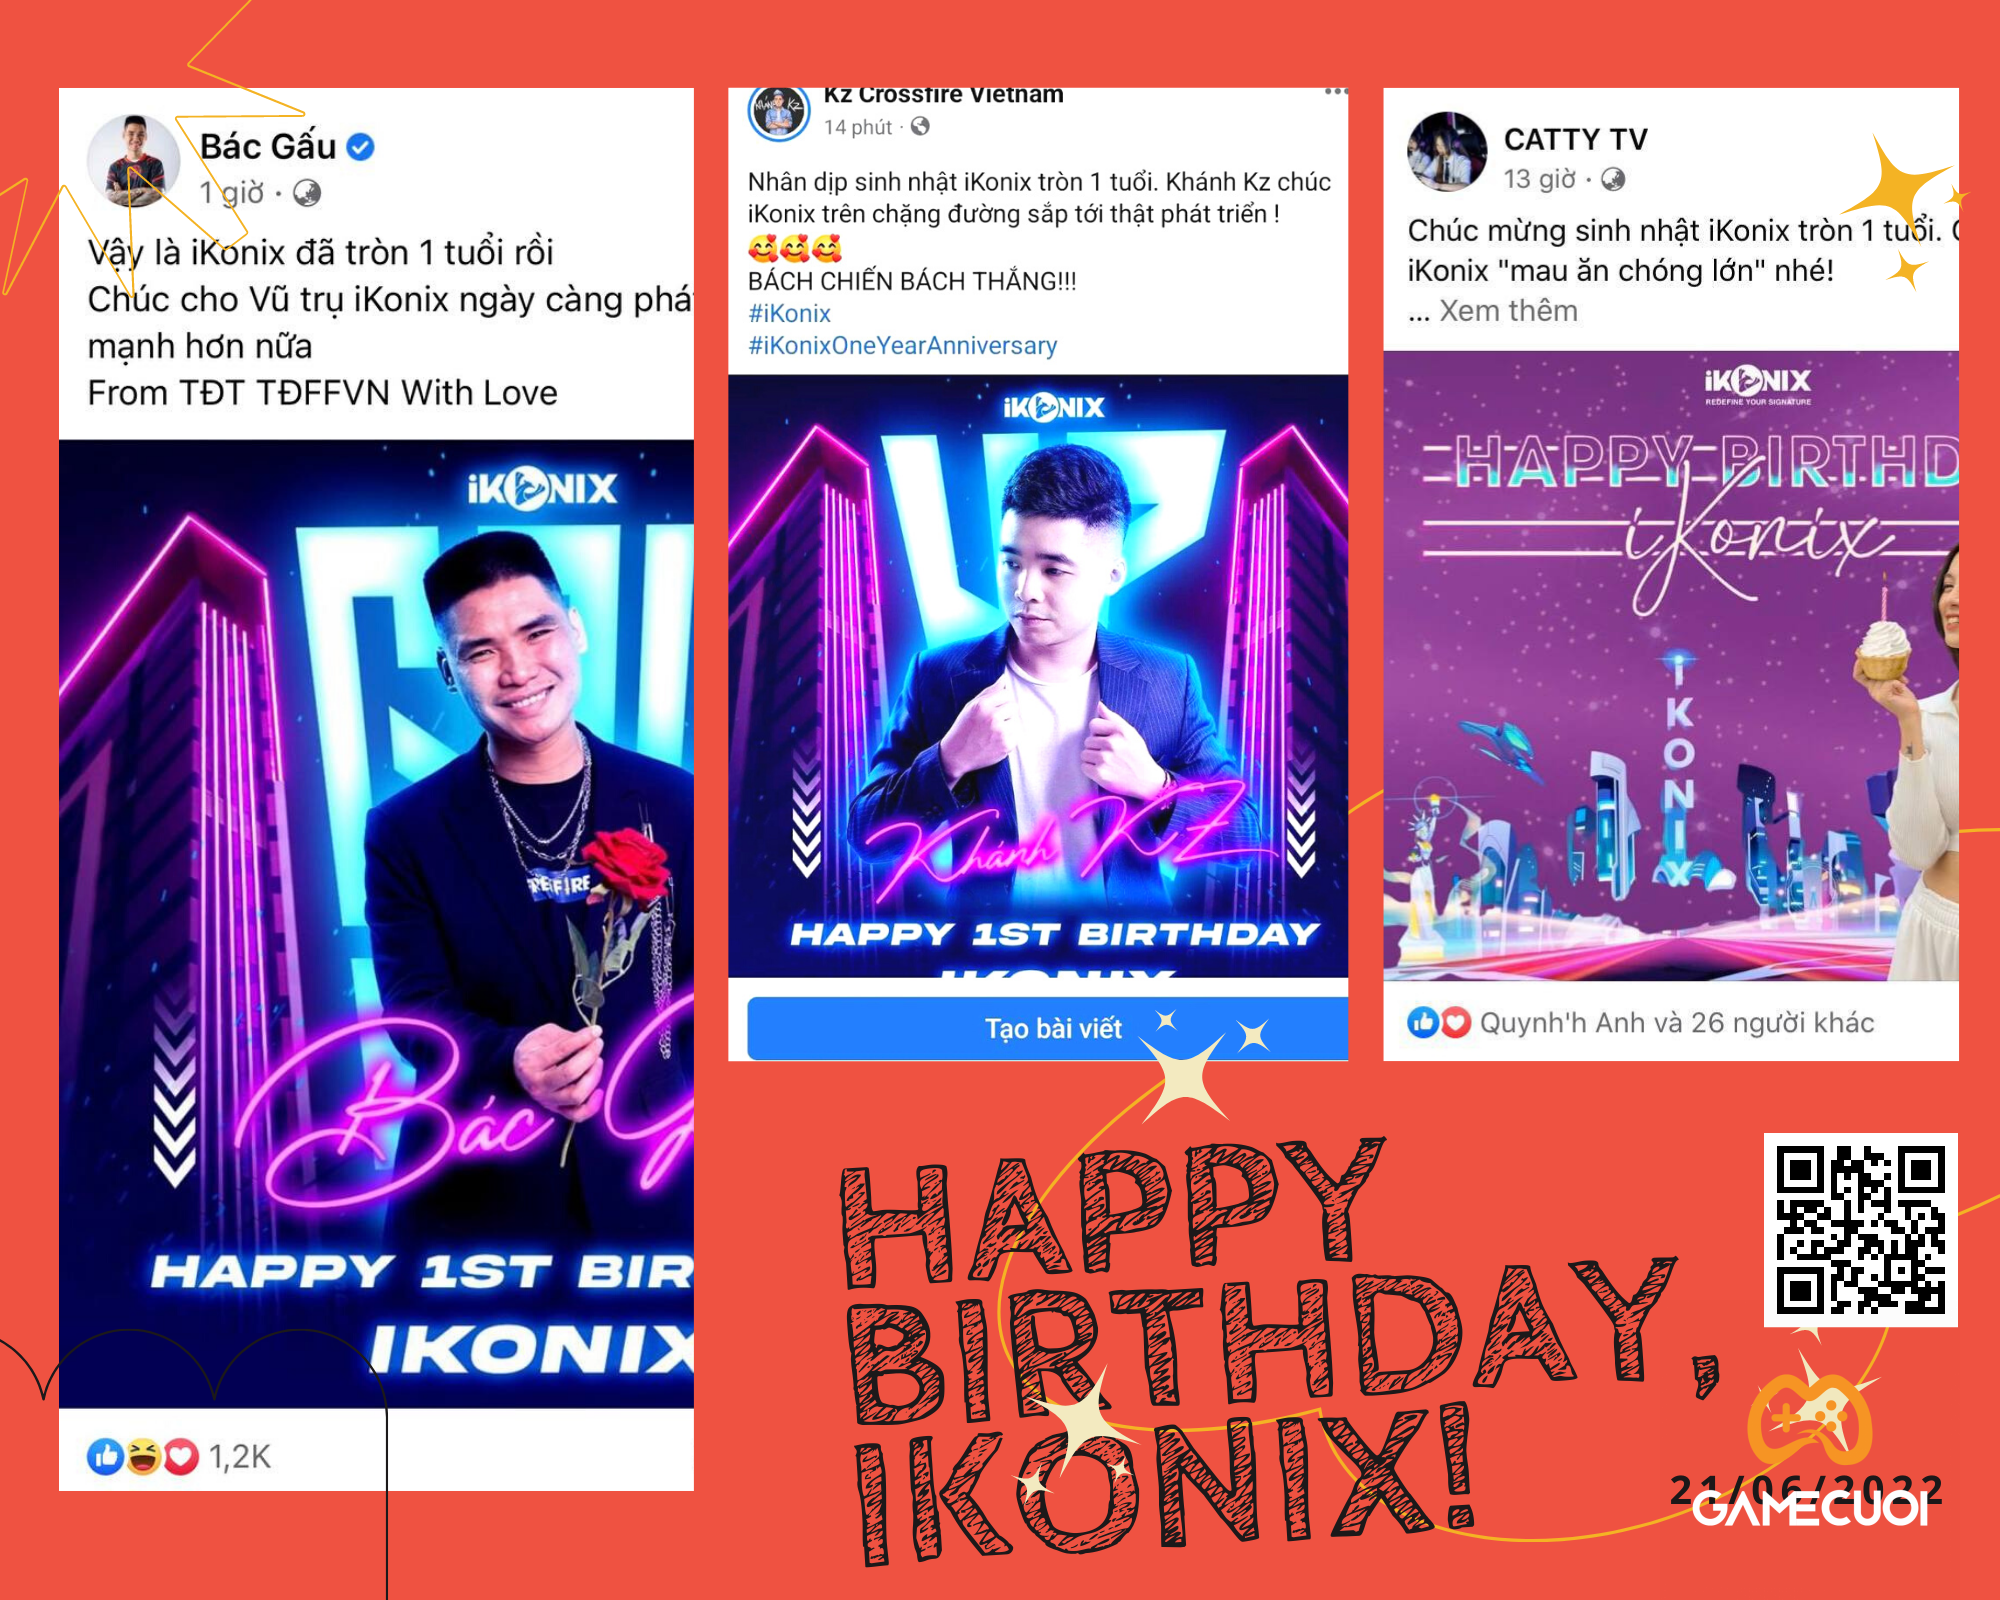 Dàn KOLs đình đám gửi lời chúc mừng sinh nhật iKonix